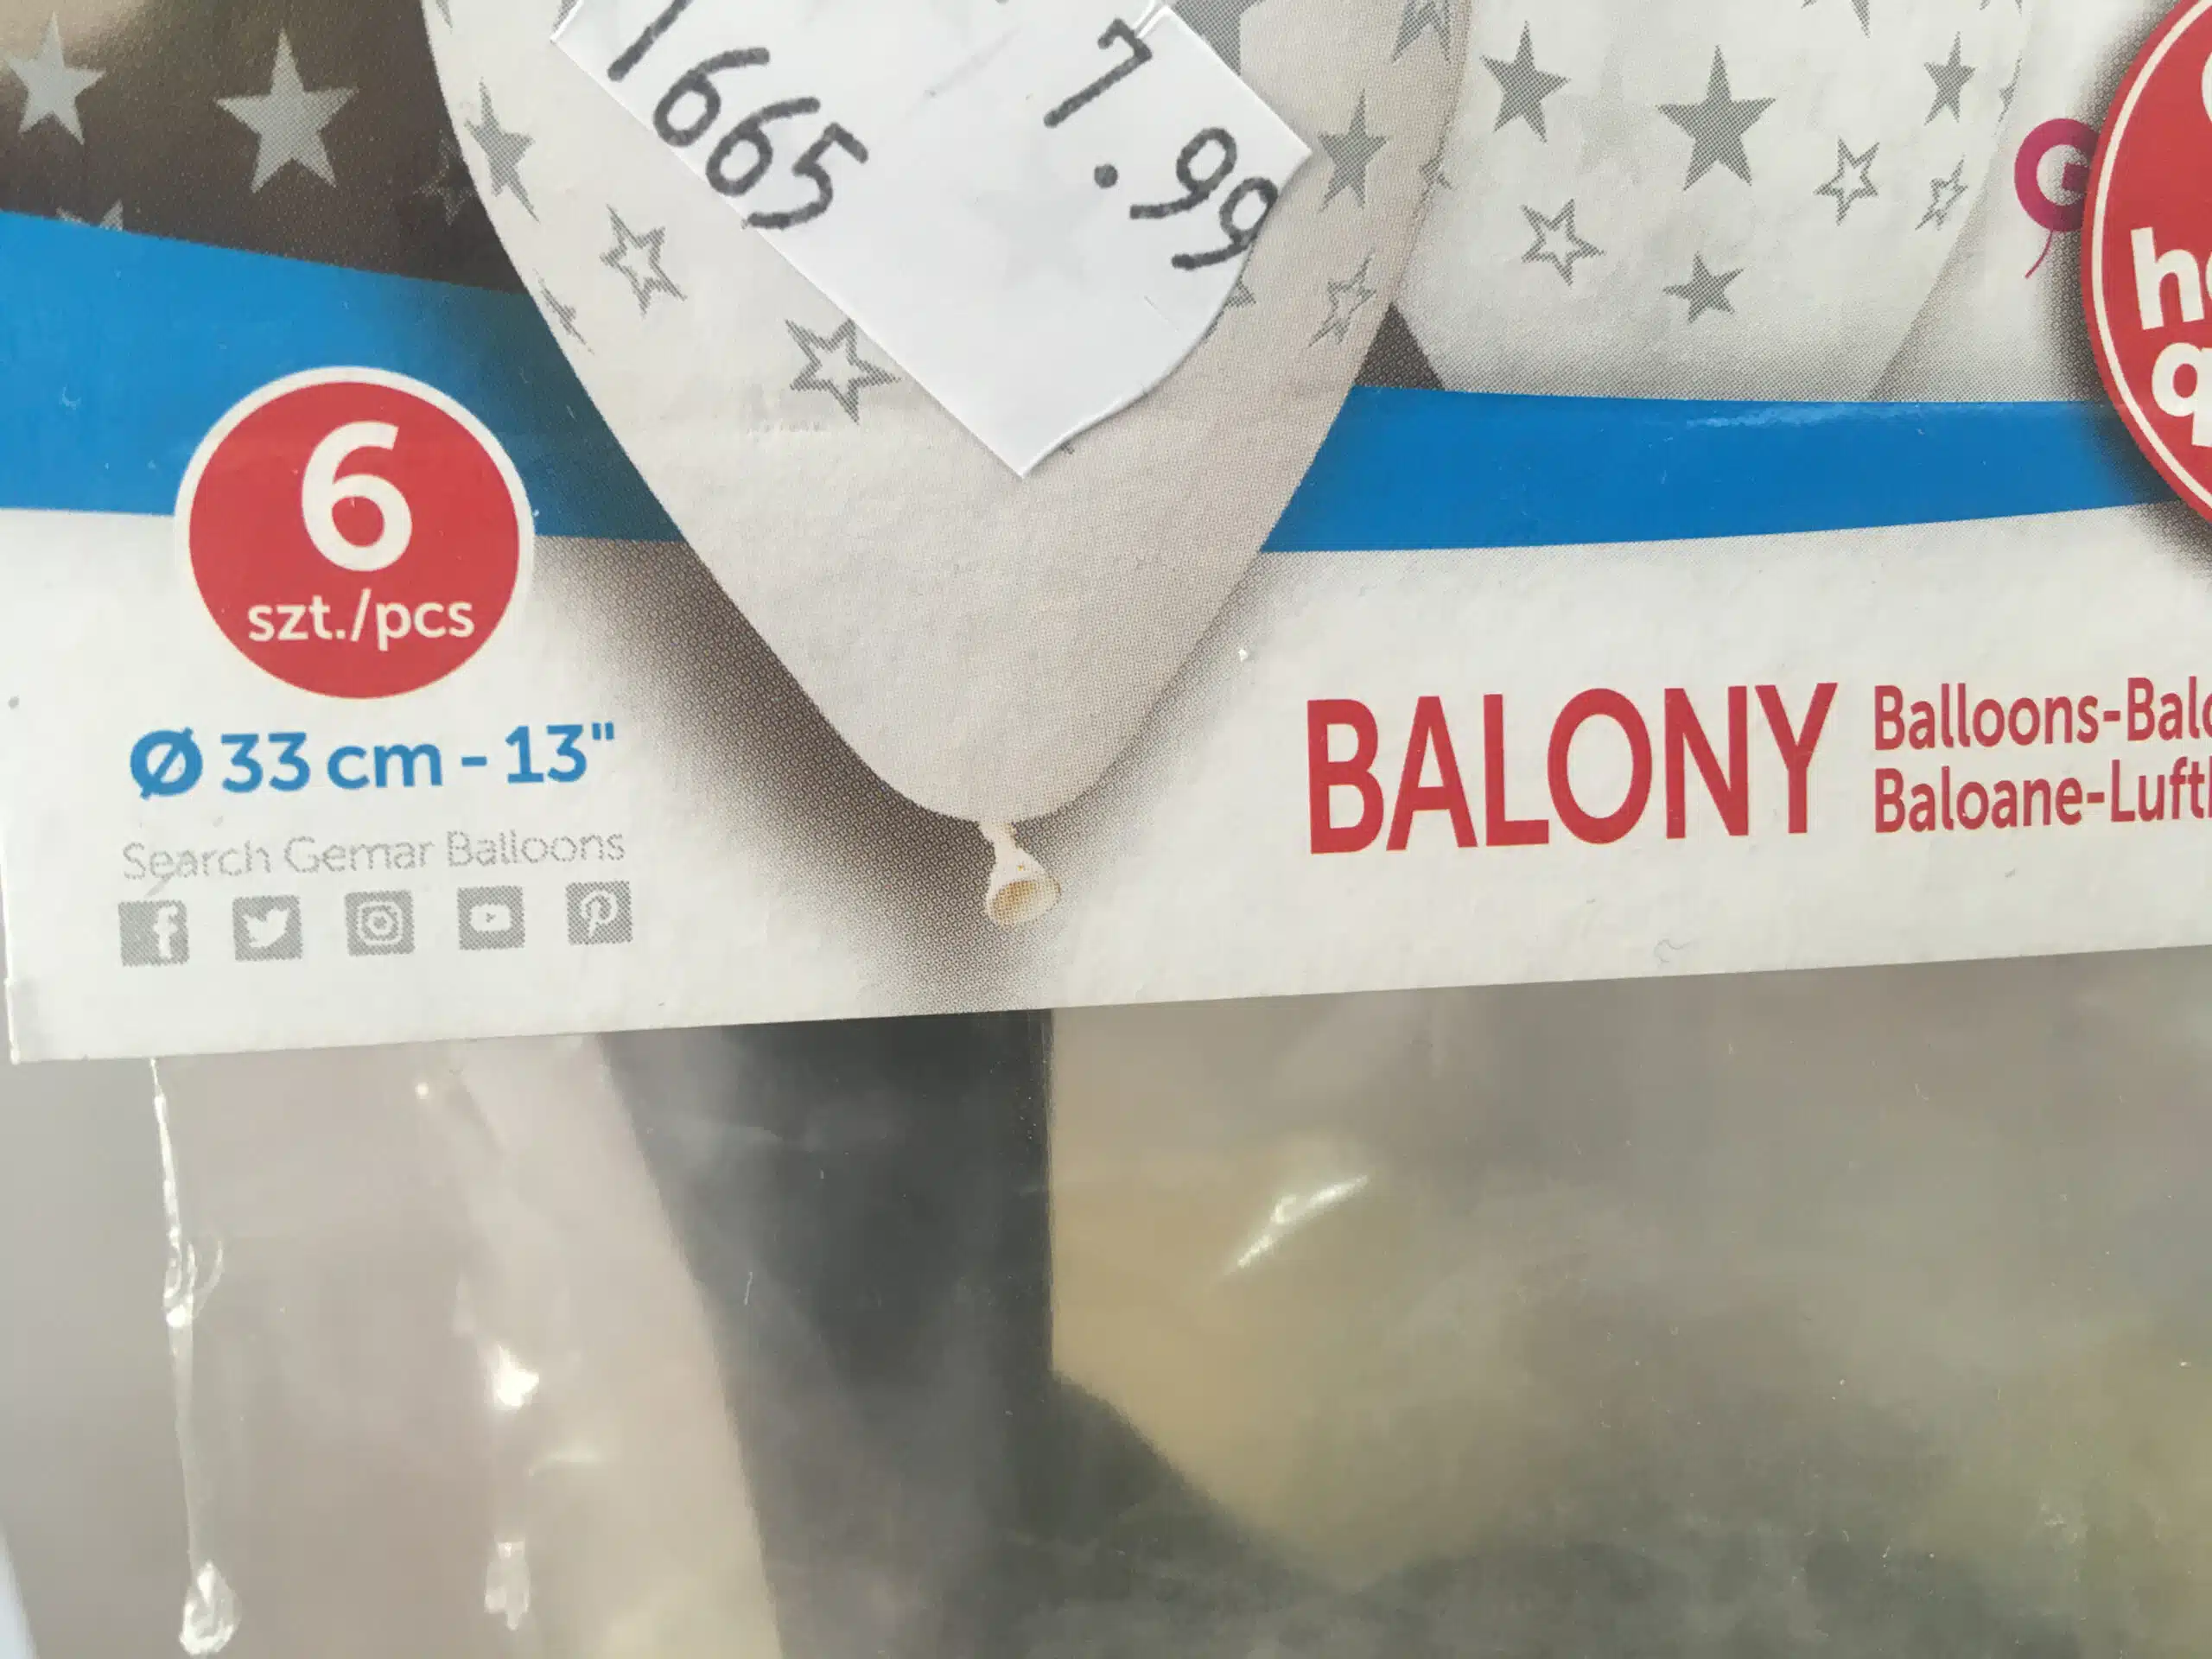 Balony - Wielkość wyrażona w calach, ile to cm? Jak mierzyć balony? Happenings